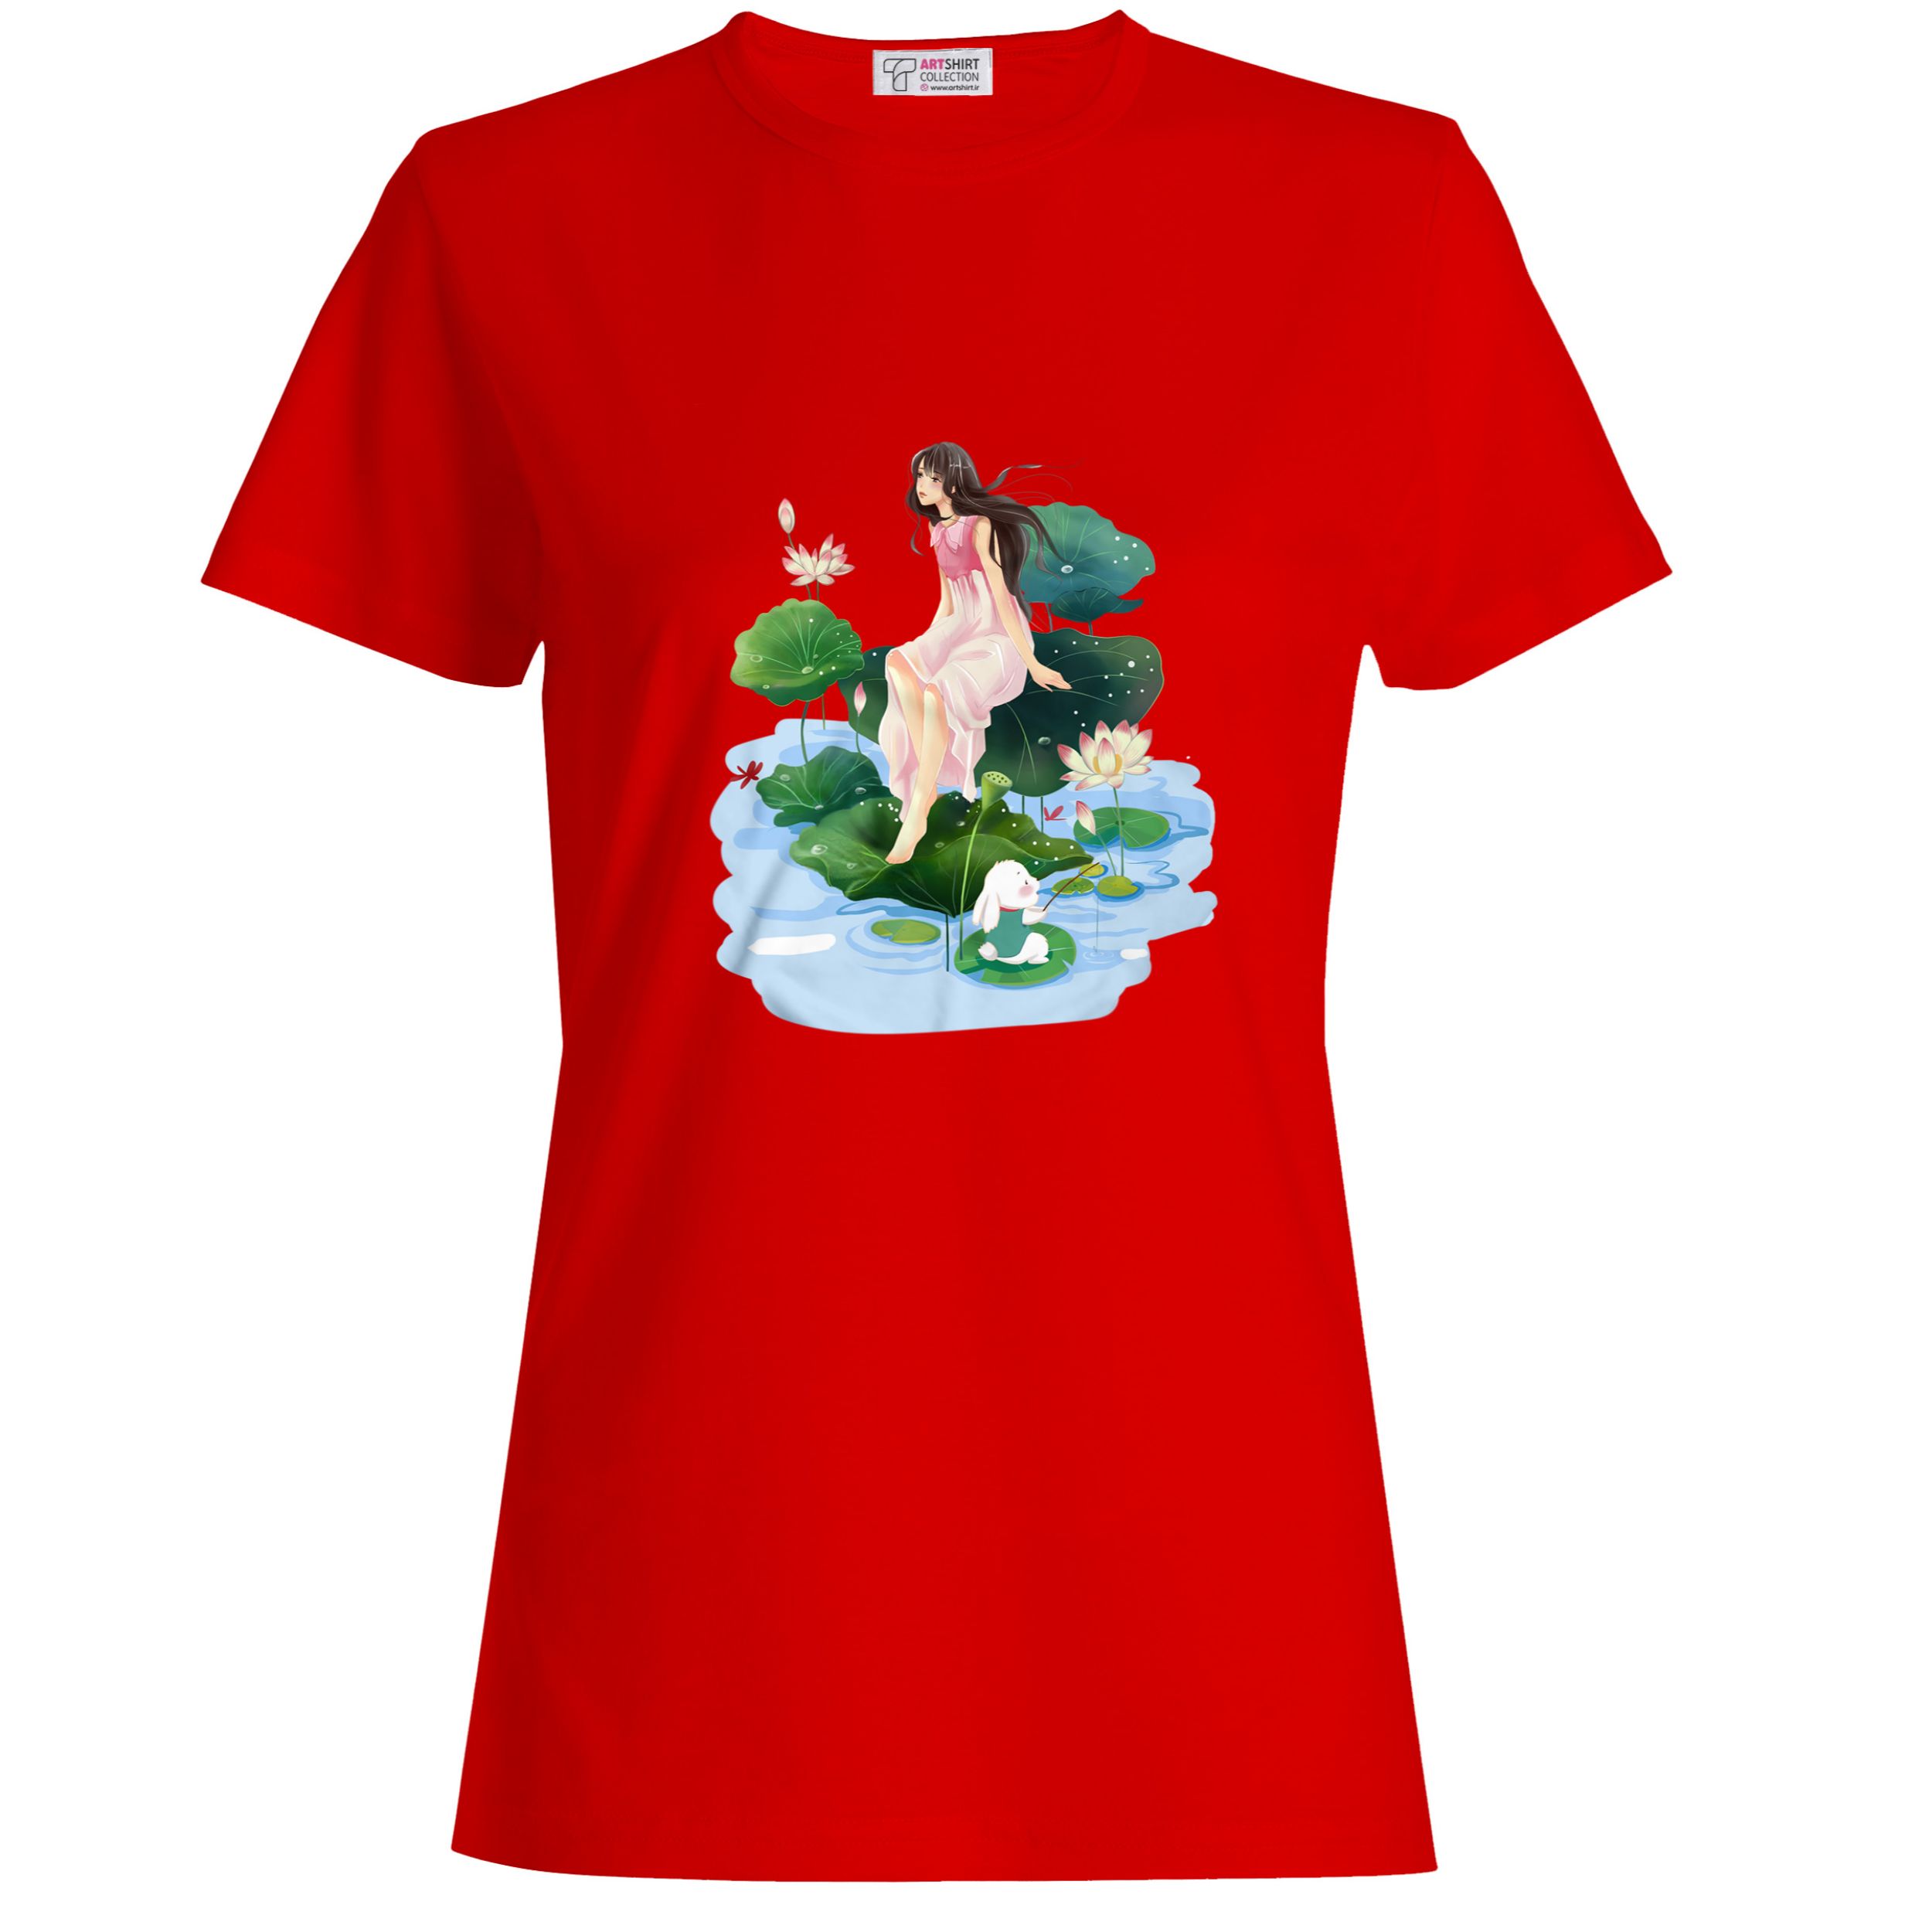 تی شرت آستین کوتاه زنانه طرح دختر کد ART-0014-R رنگ قرمز